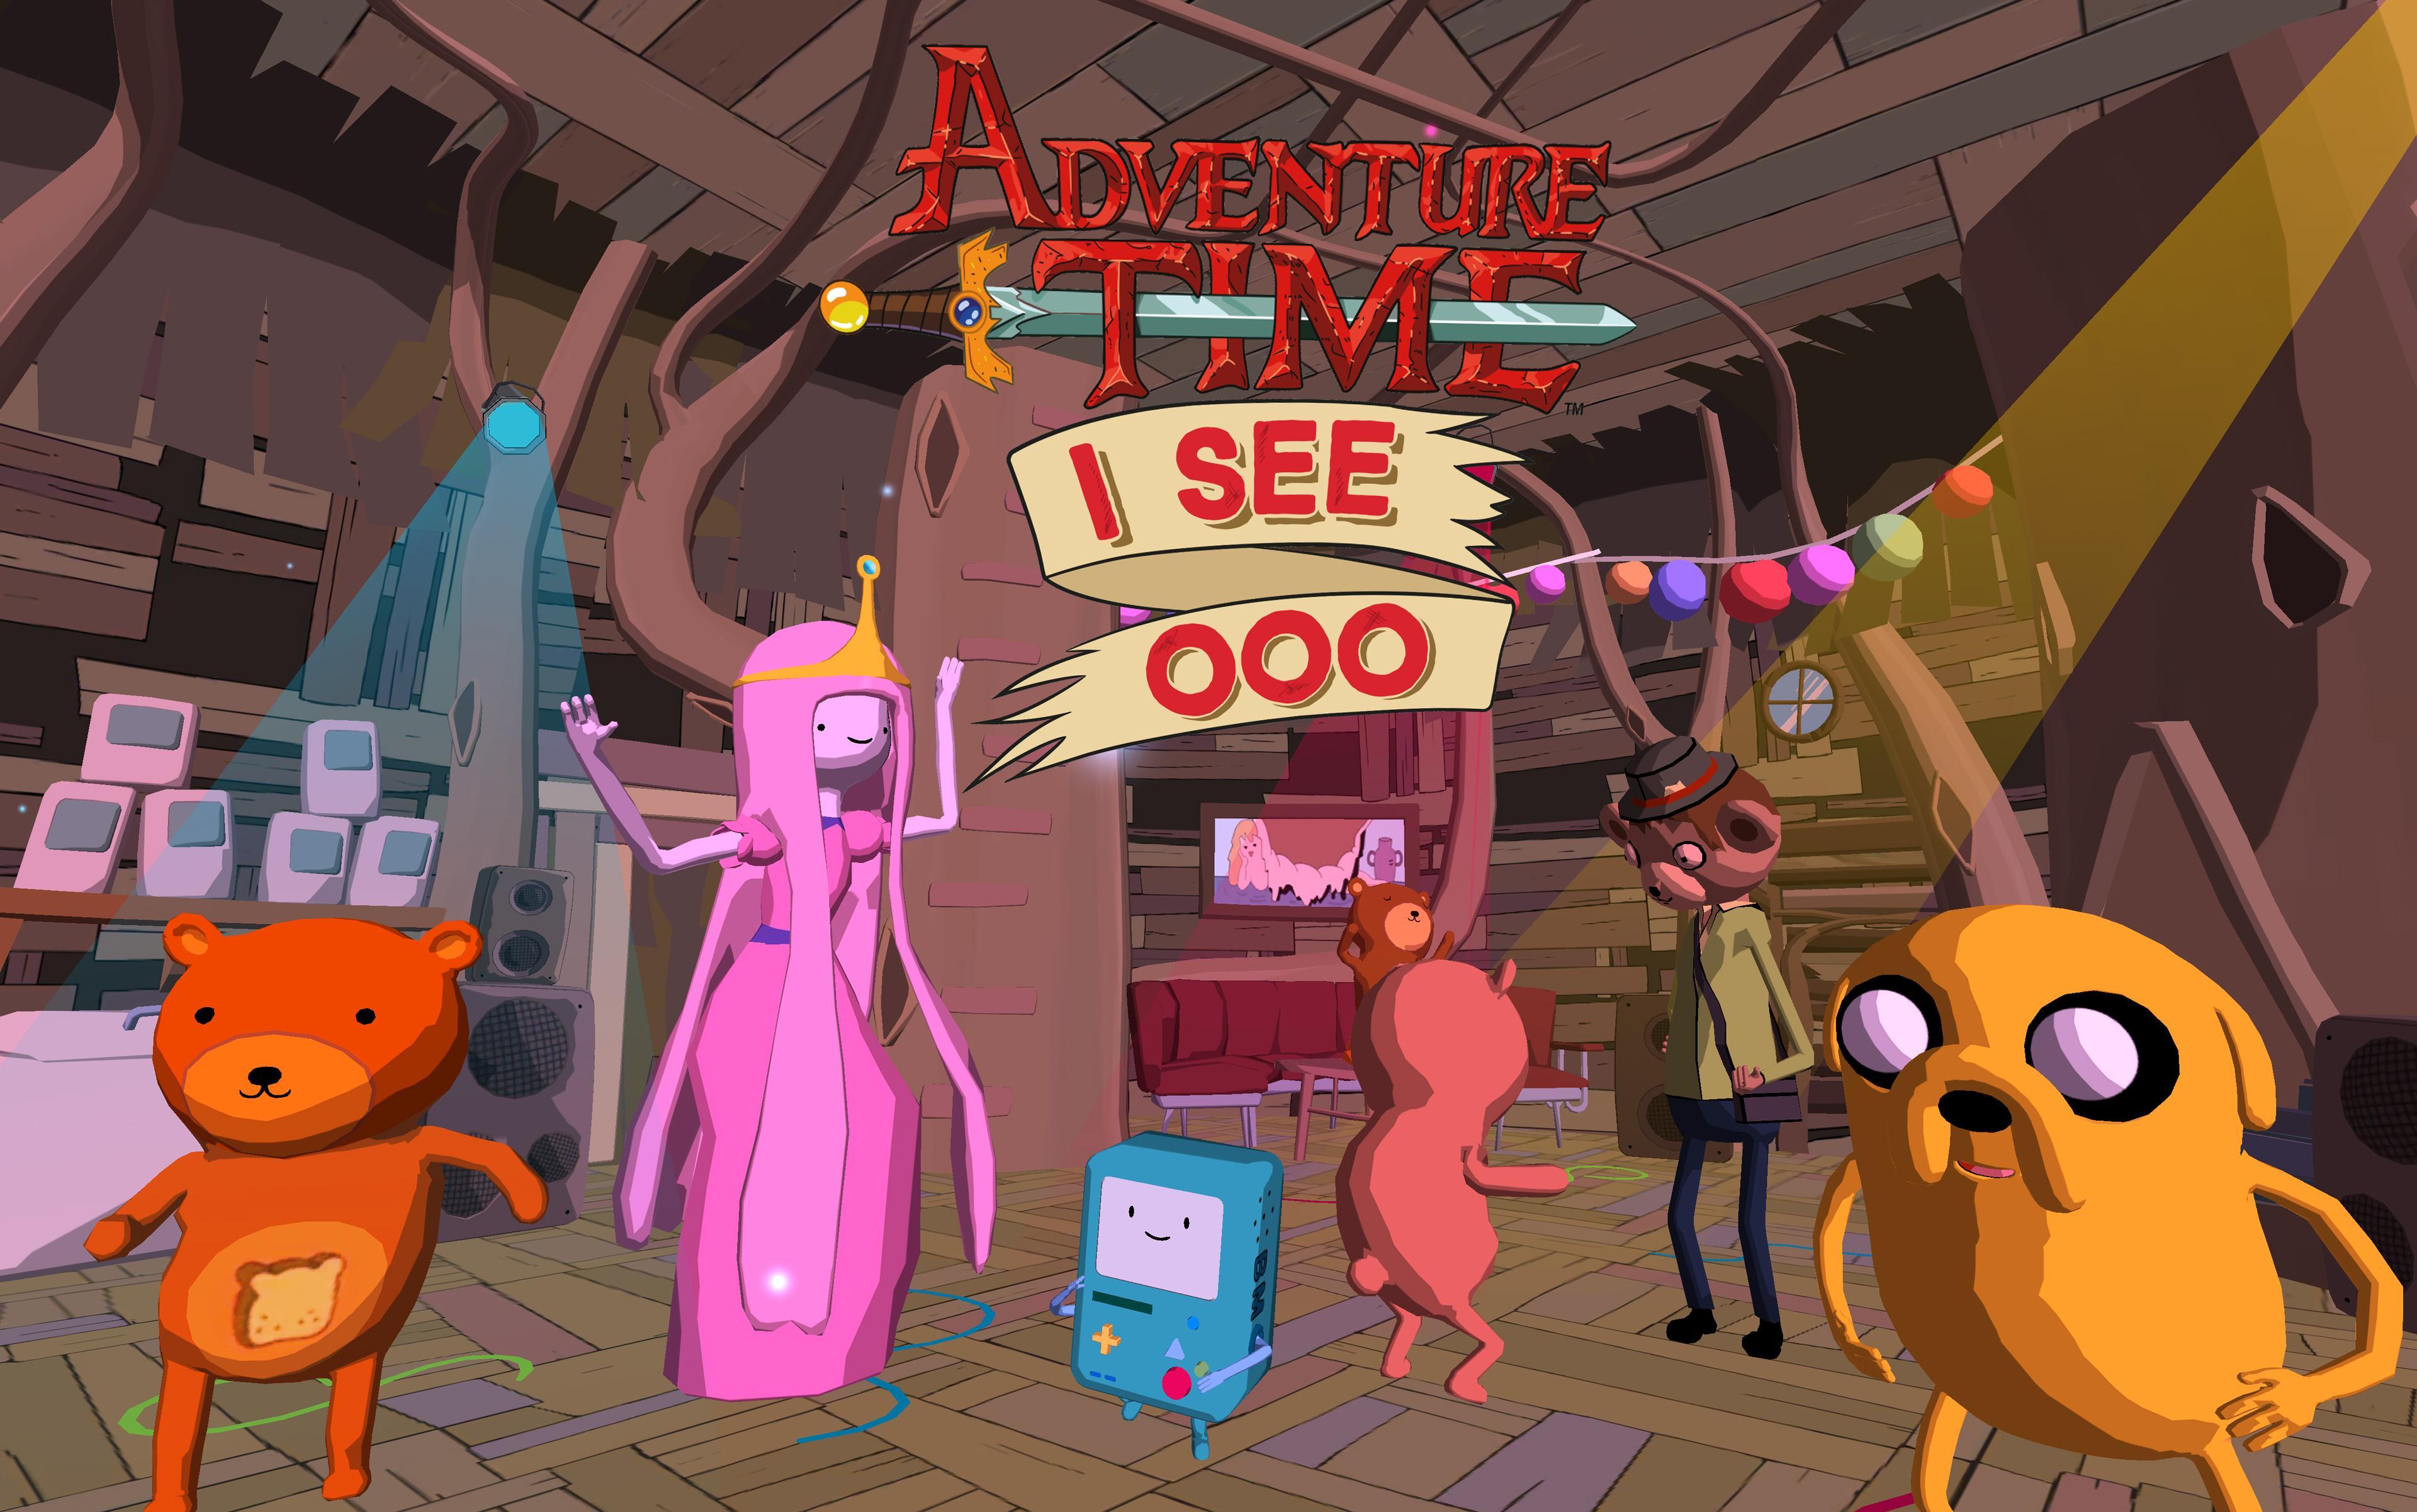 Новая версия приключений. Эдвенчер тайм игра. Игра по времени приключений. Adventure time игра на ПК. Adventure time игра на телефон.